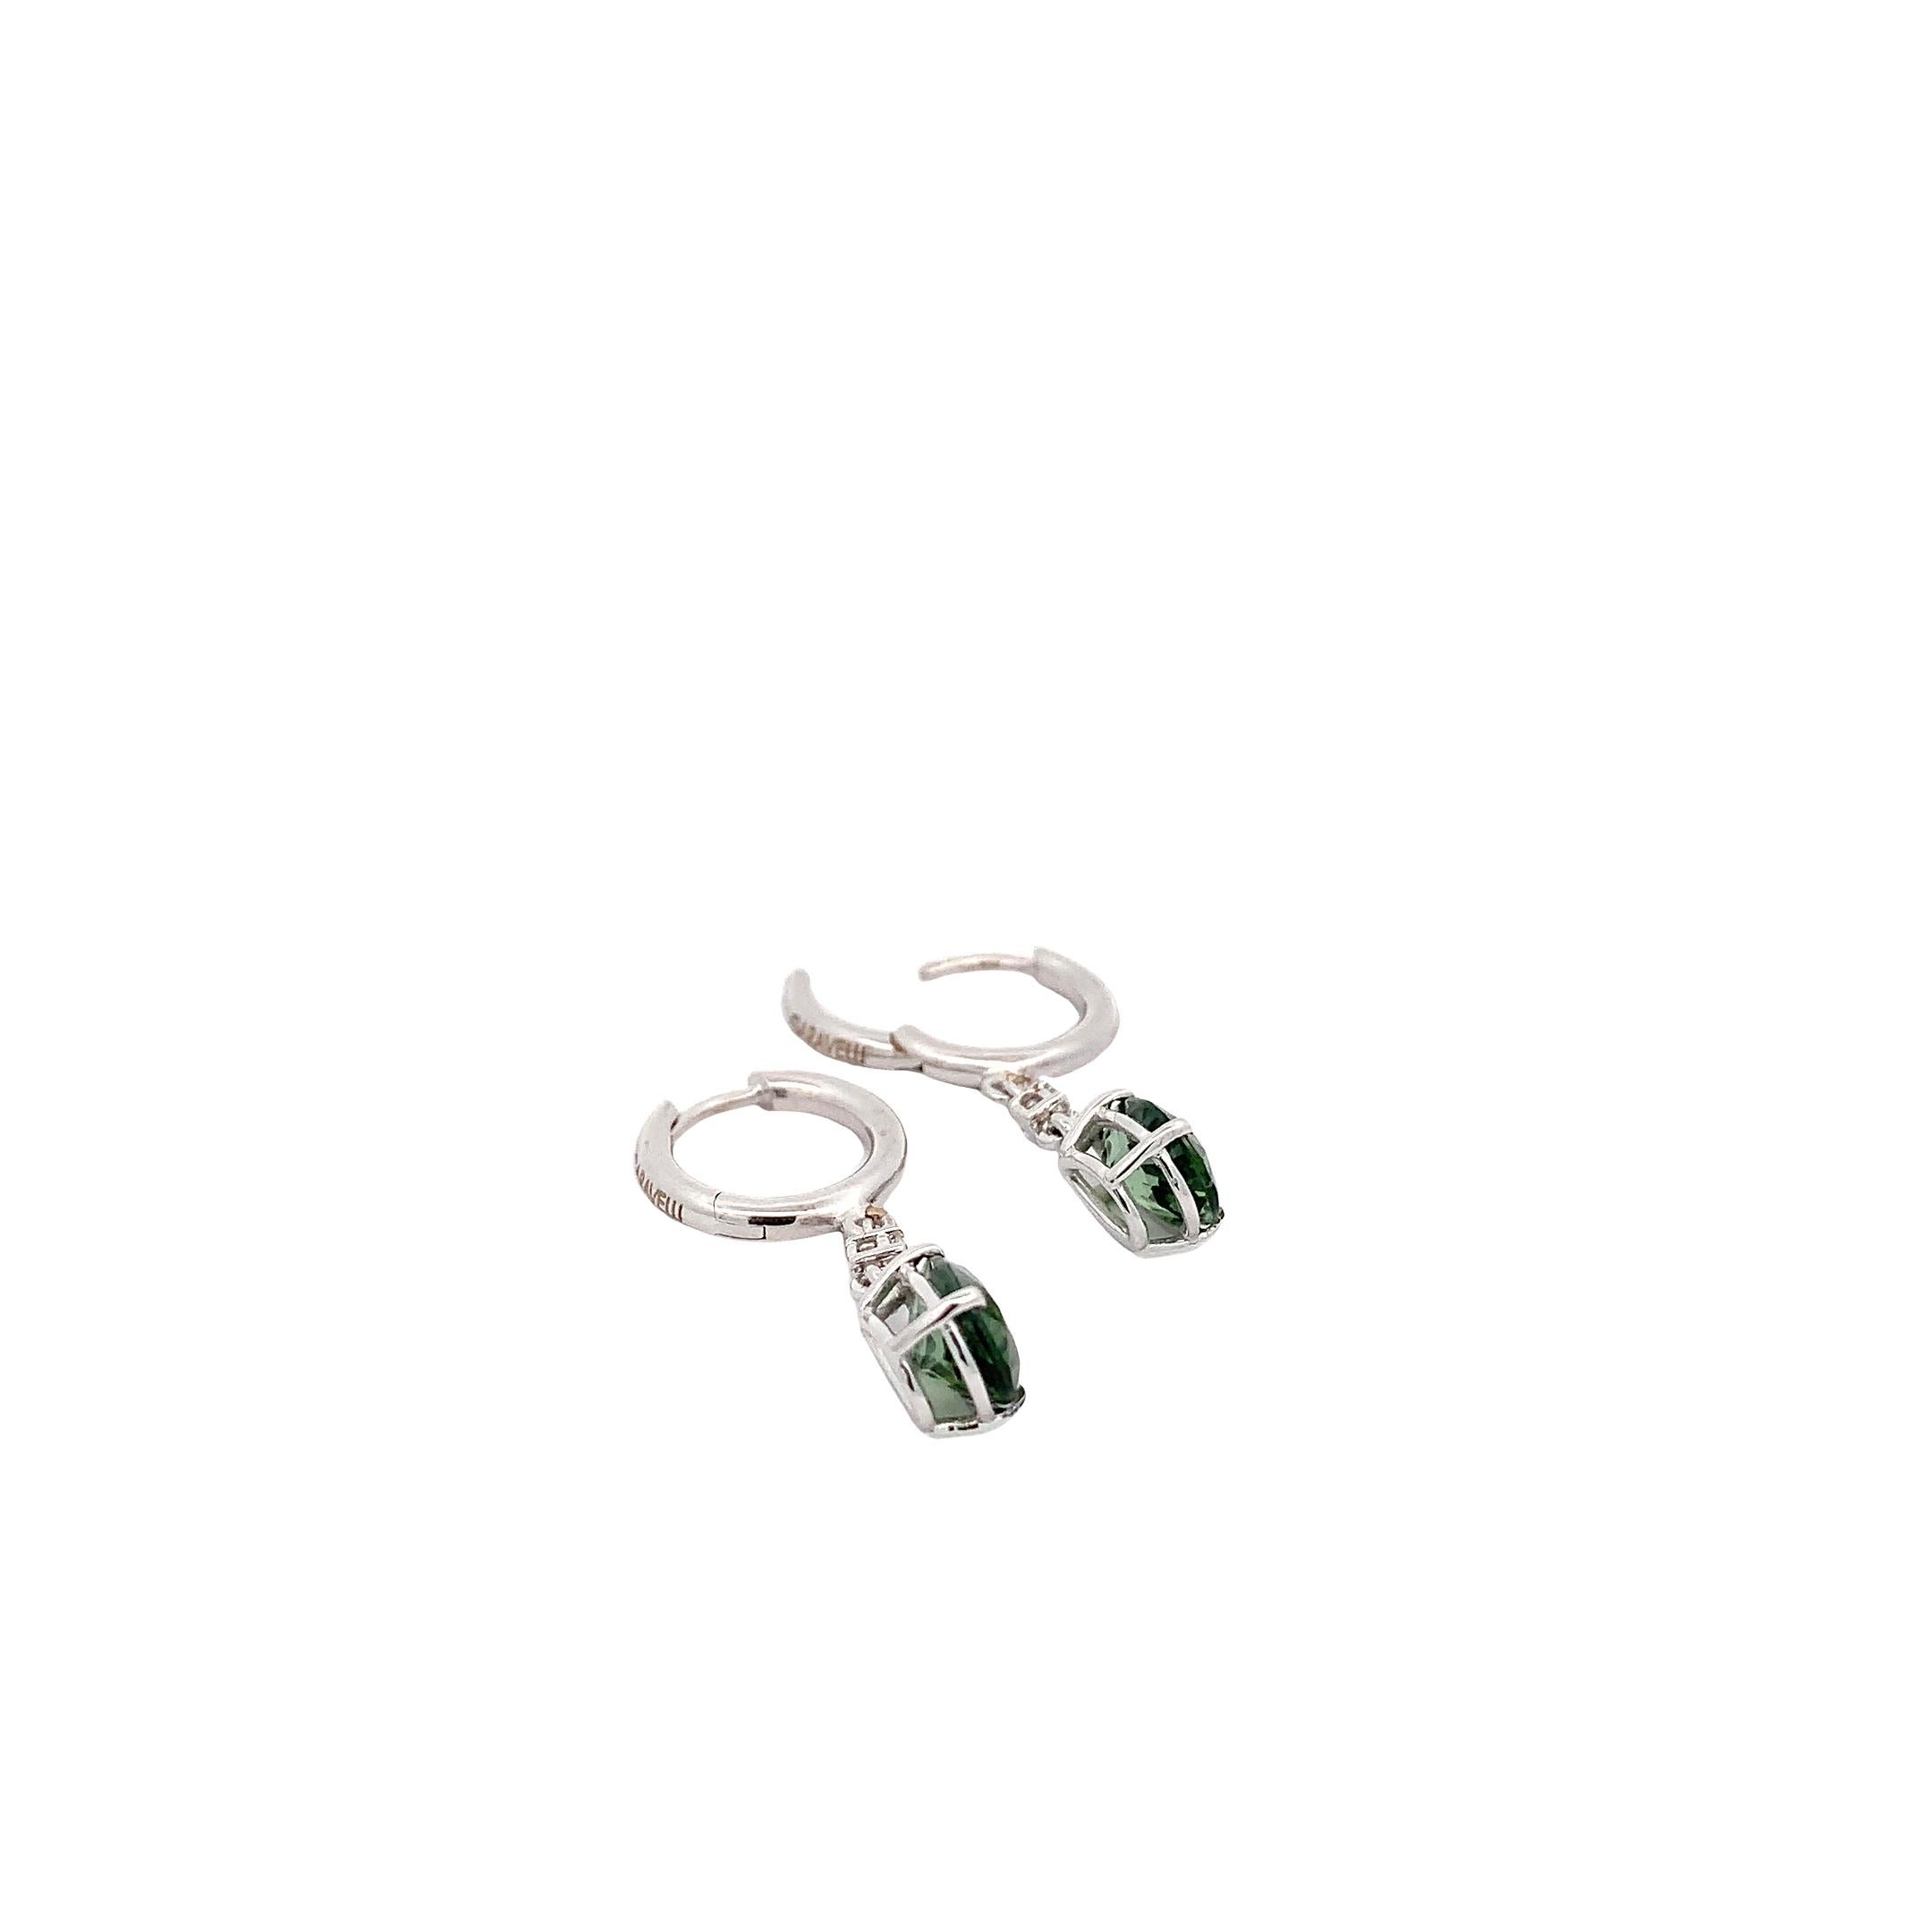 Élevez votre élégance avec les boucles d'oreilles pendantes Garavelli en or blanc 18 carats, ornées de tourmalines vertes et de diamants blancs. Ces boucles d'oreilles exquises, fabriquées avec précision et style, sont un témoignage de beauté et de